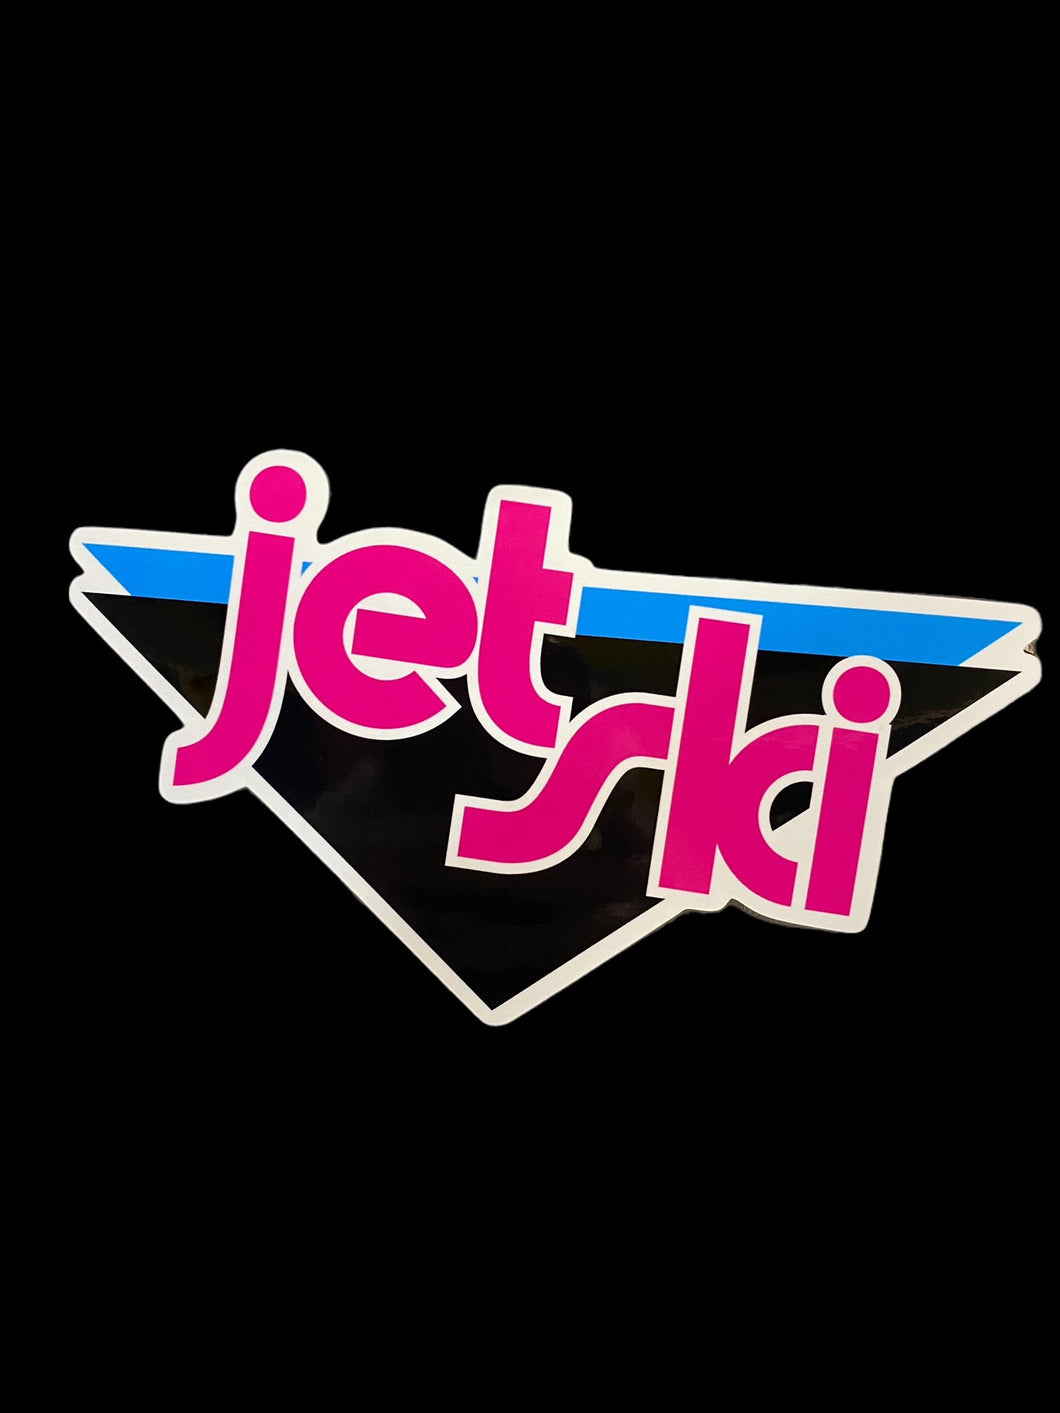 Jet Ski Sticker